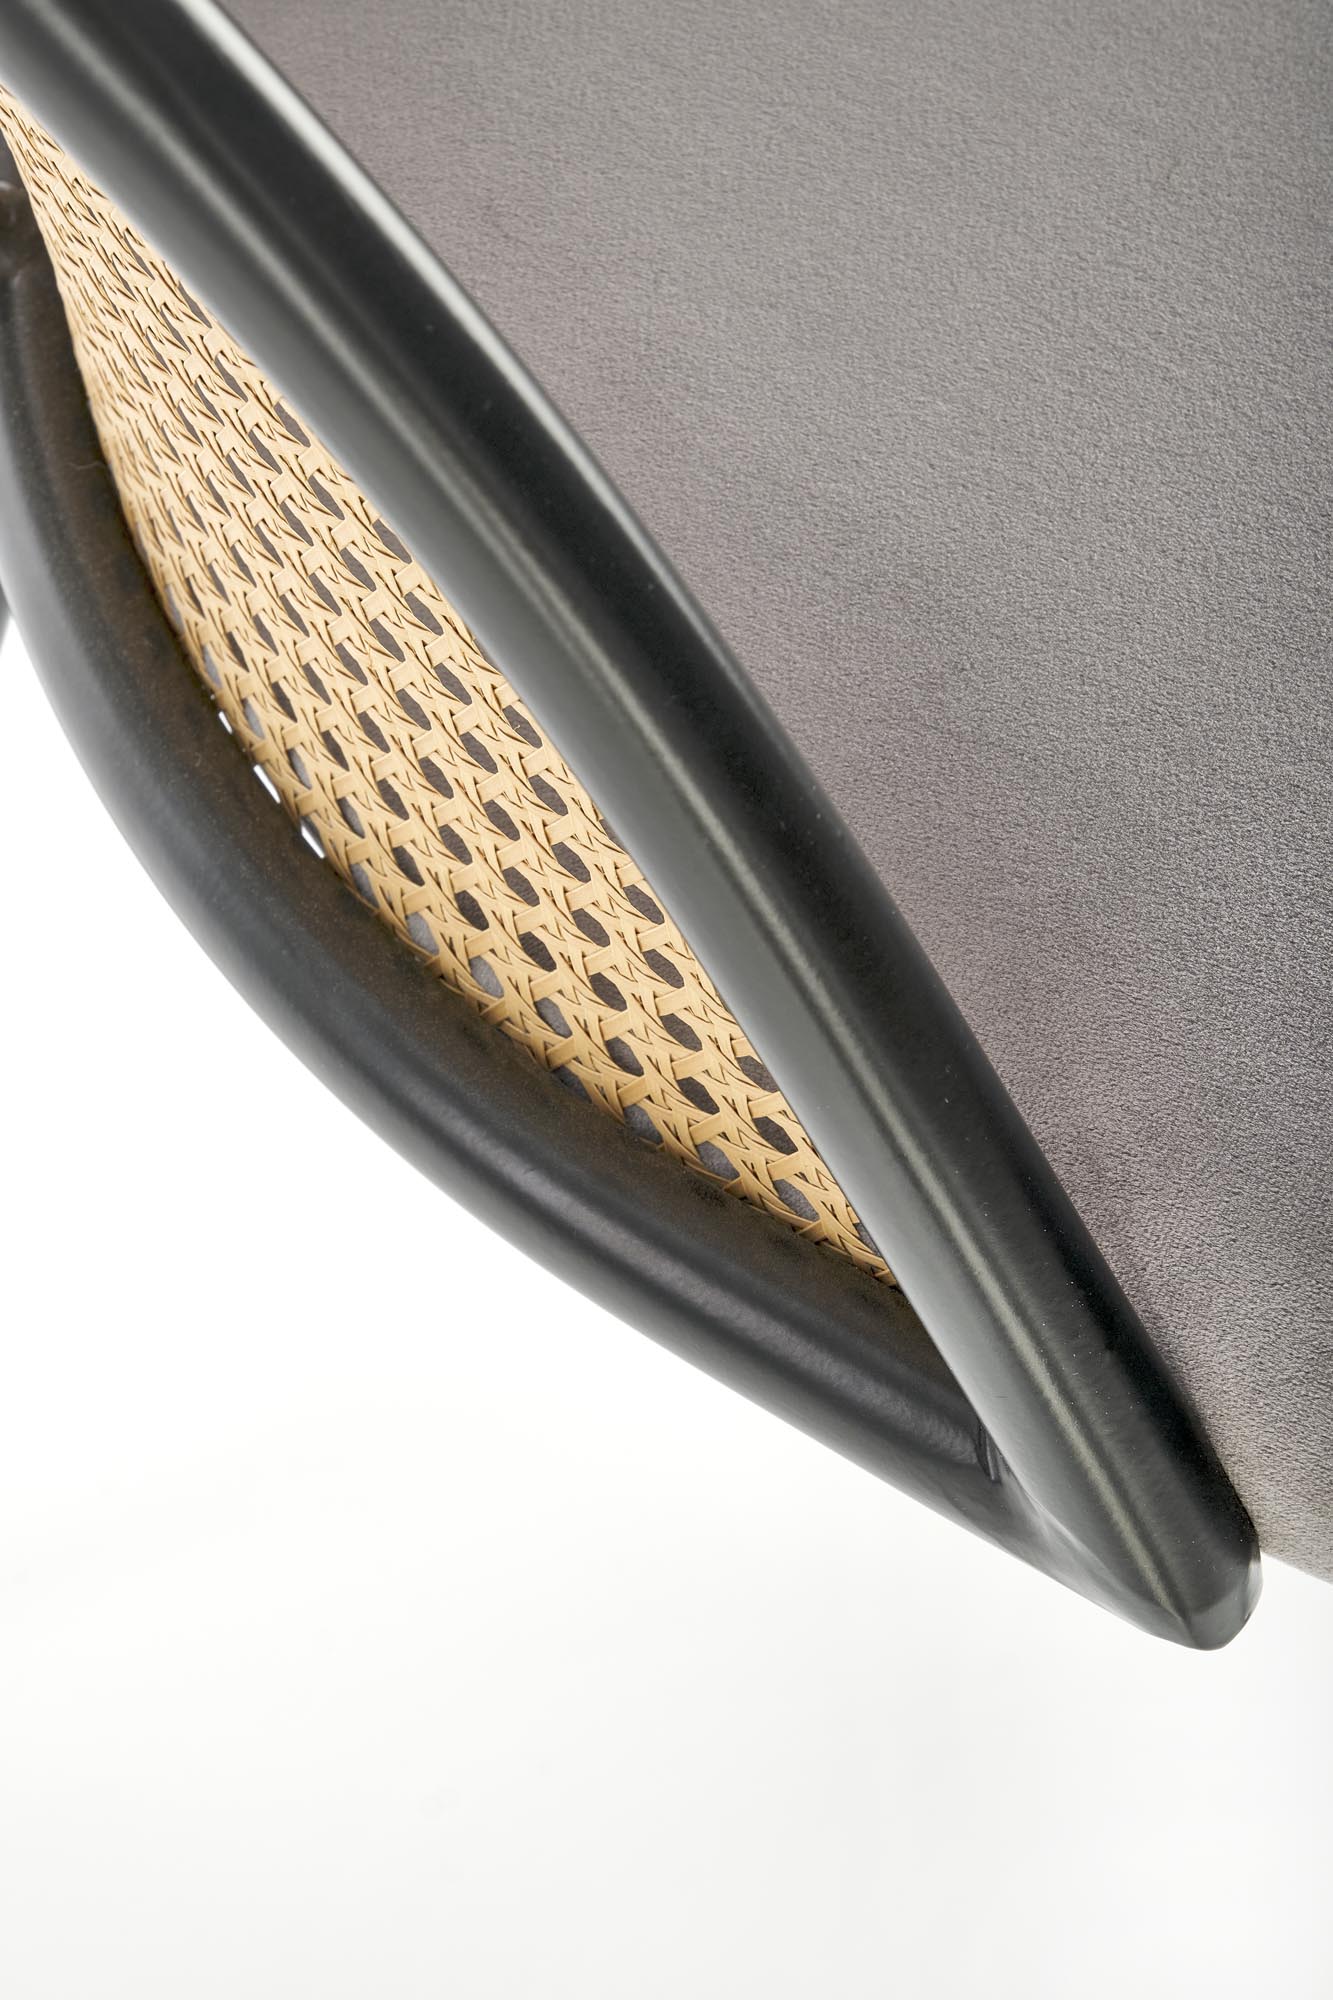 Krzesło z tapicerowanym siedziskiem K508 - popielaty krzesło z tapicerowanym siedziskiem k508 - popielaty